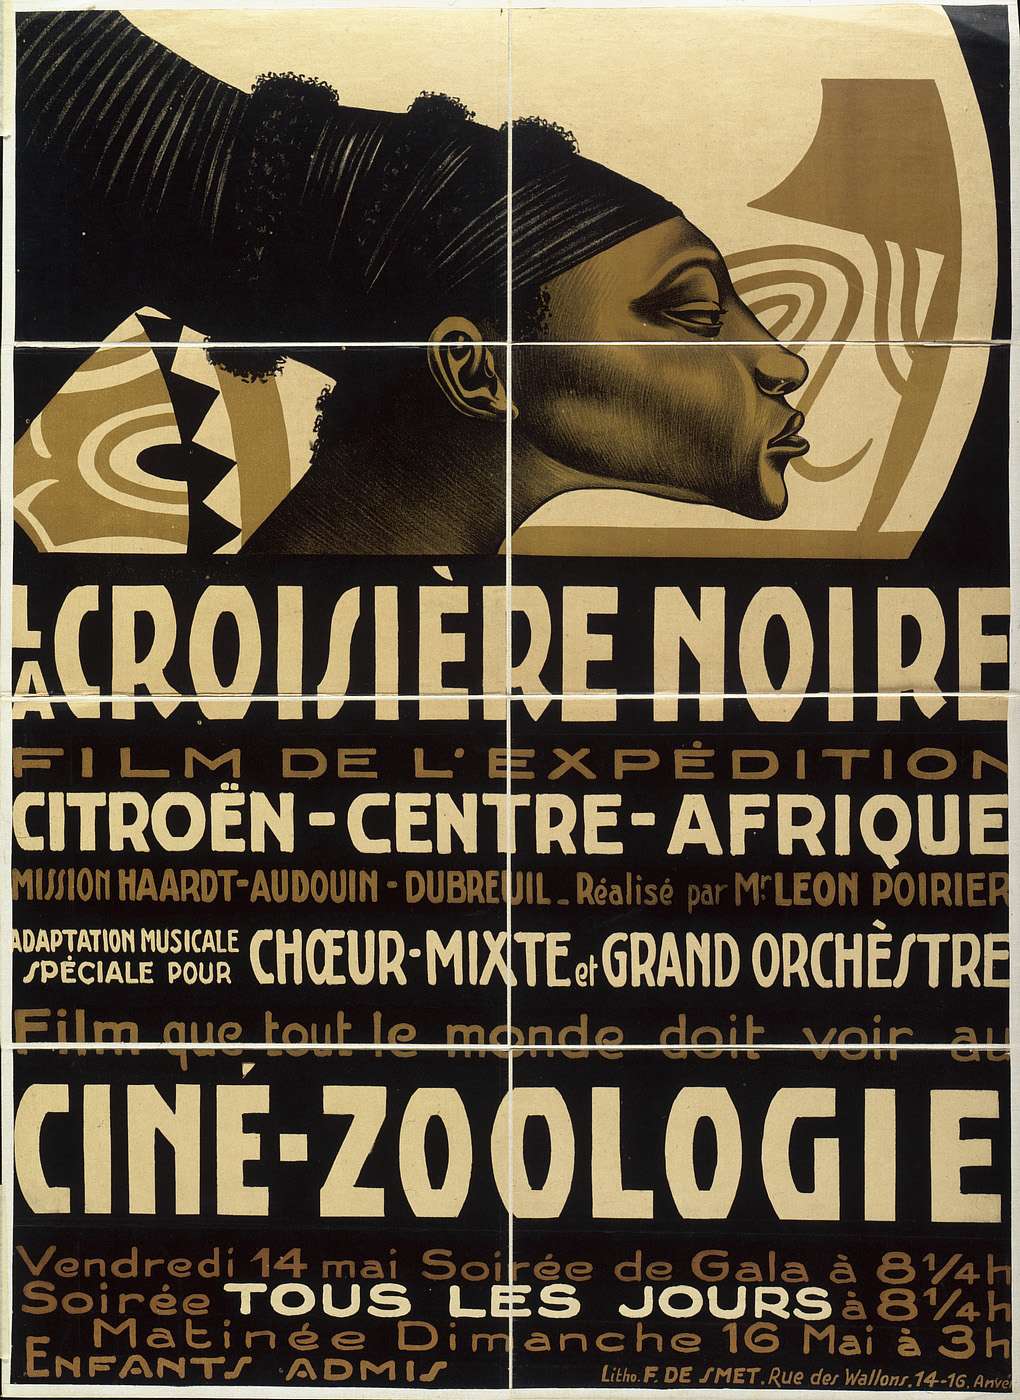 La Croisière noire, film de l'exposition Citroën-Centre-Afrique.